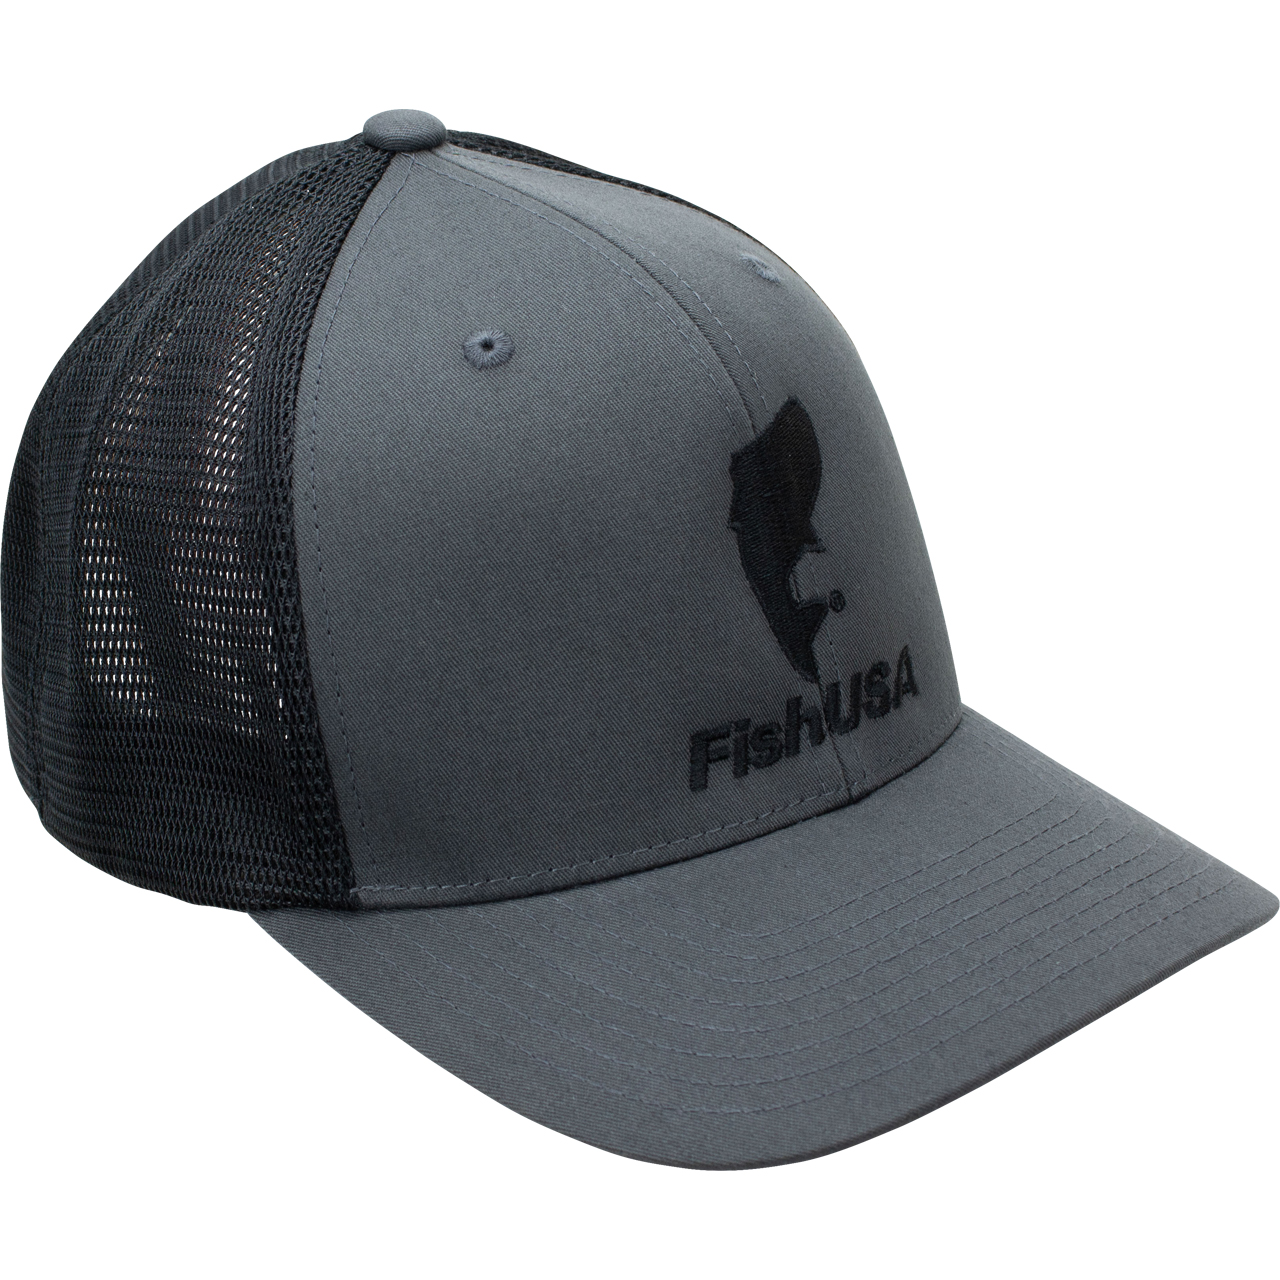 FishUSA Flexfit Trucker Hat | FishUSA